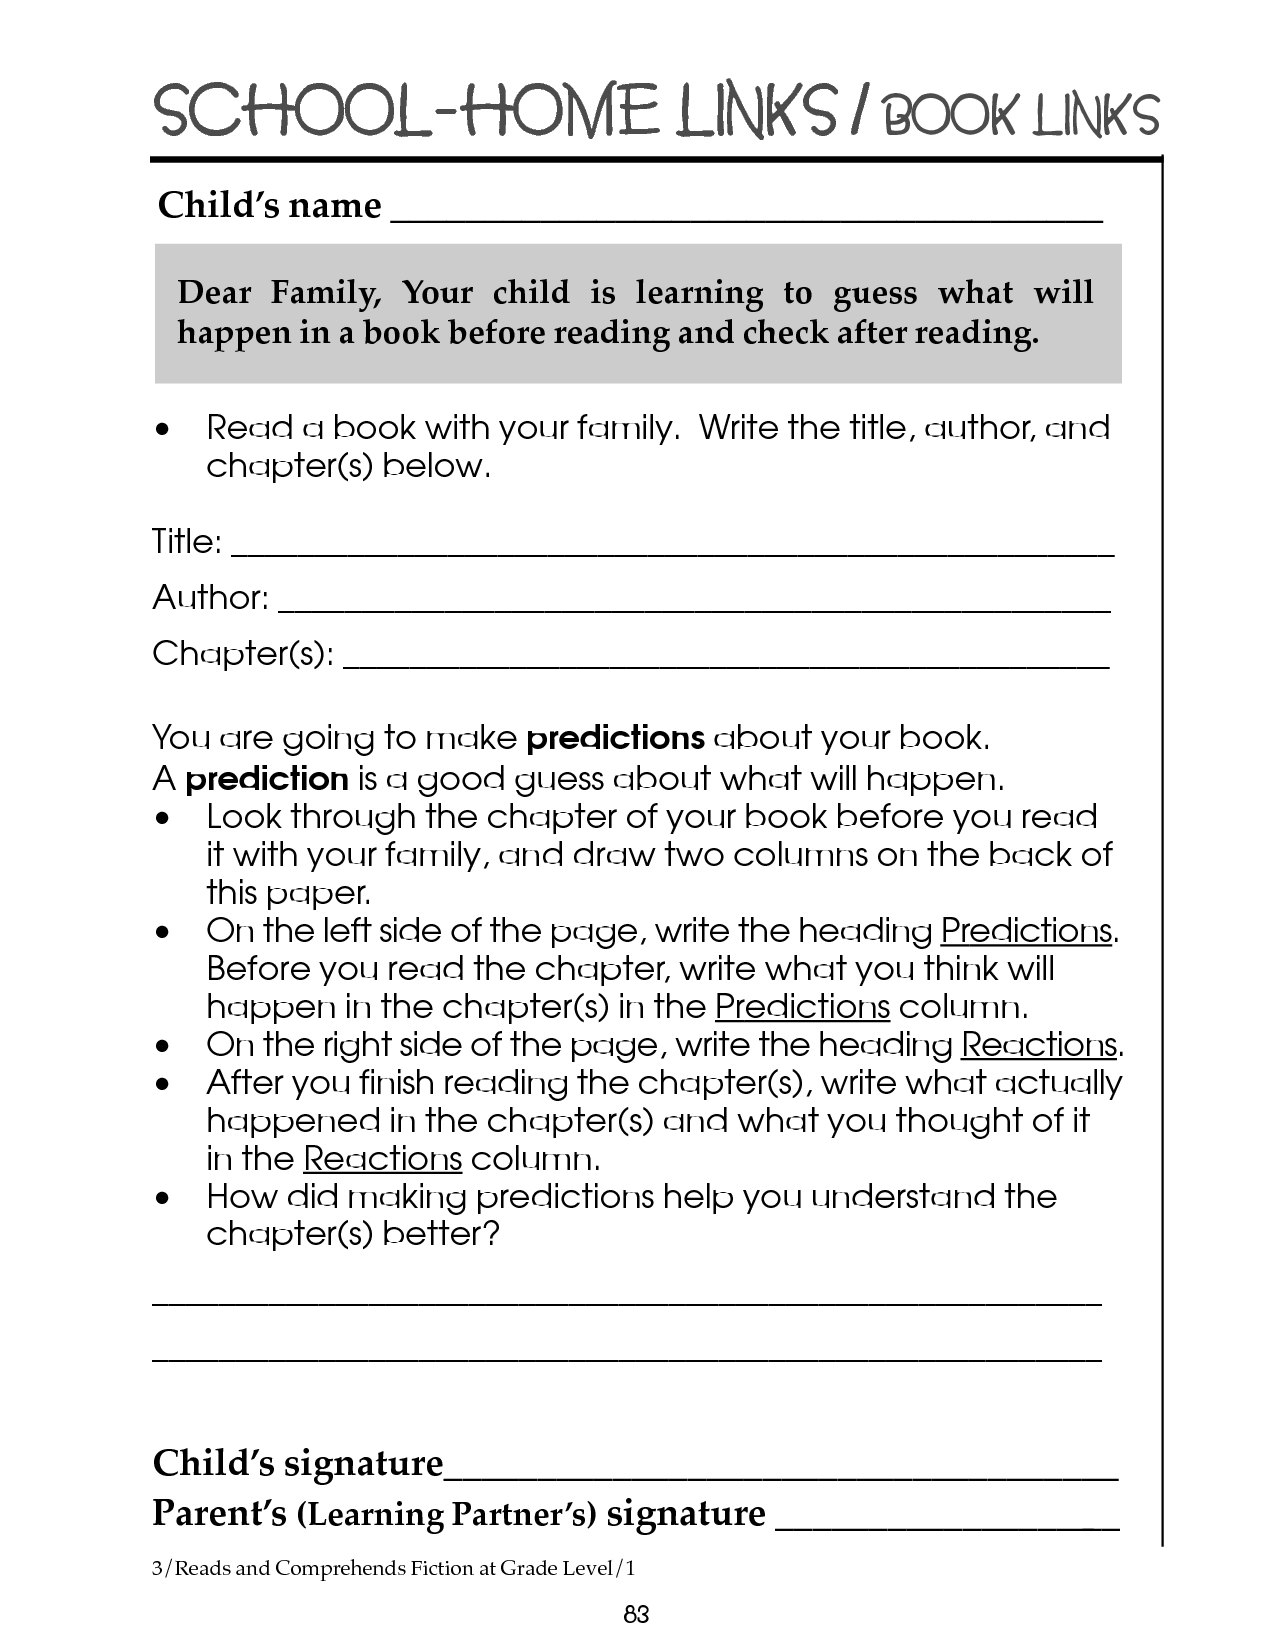 Reading Comprehension Worksheets Grade 3 Image